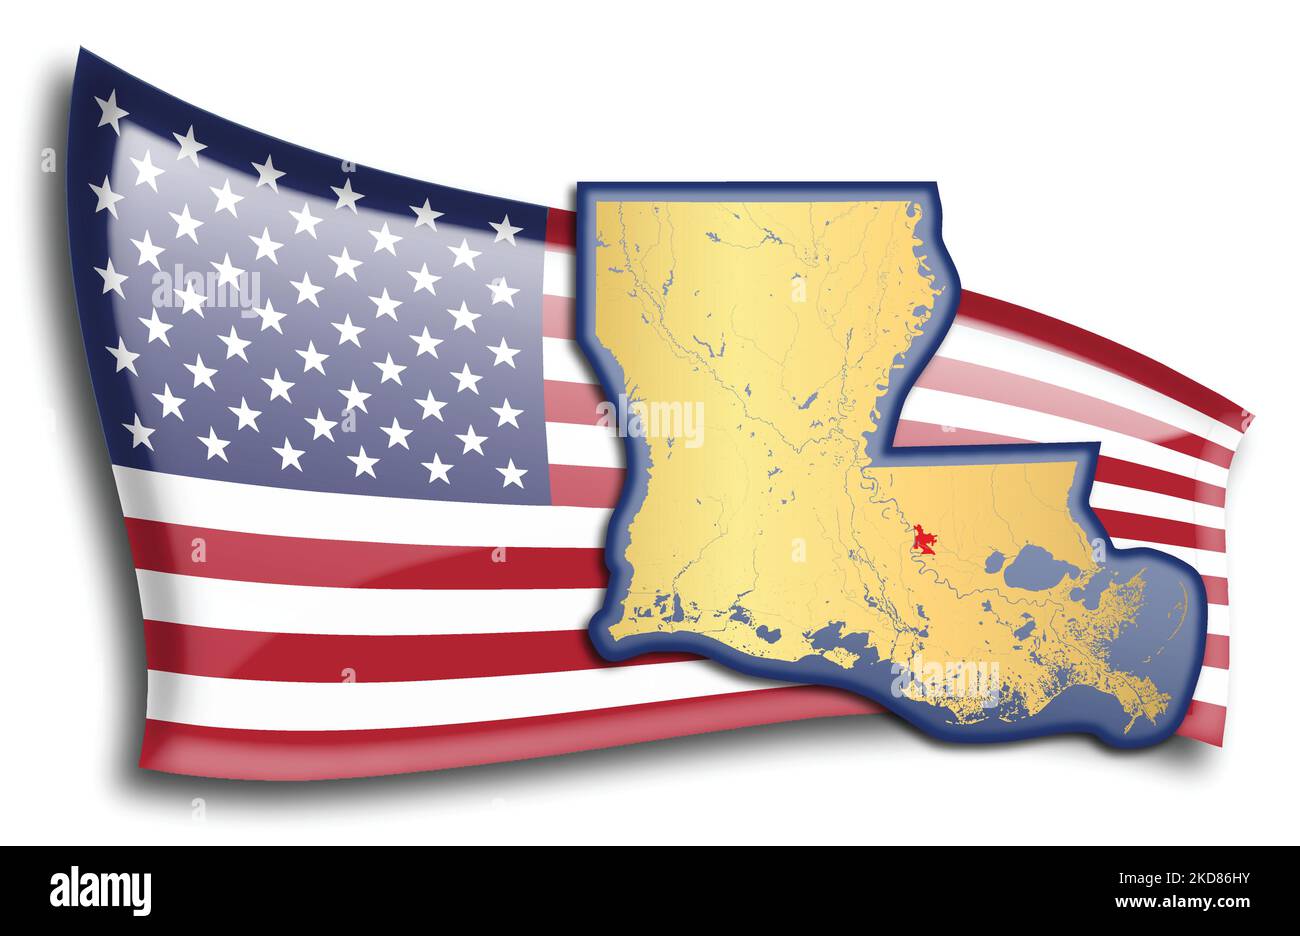 Estados Unidos - mapa de Luisiana contra una bandera estadounidense. Los ríos y lagos se muestran en el mapa. La bandera americana y el mapa del estado se pueden utilizar por separado y. Ilustración del Vector